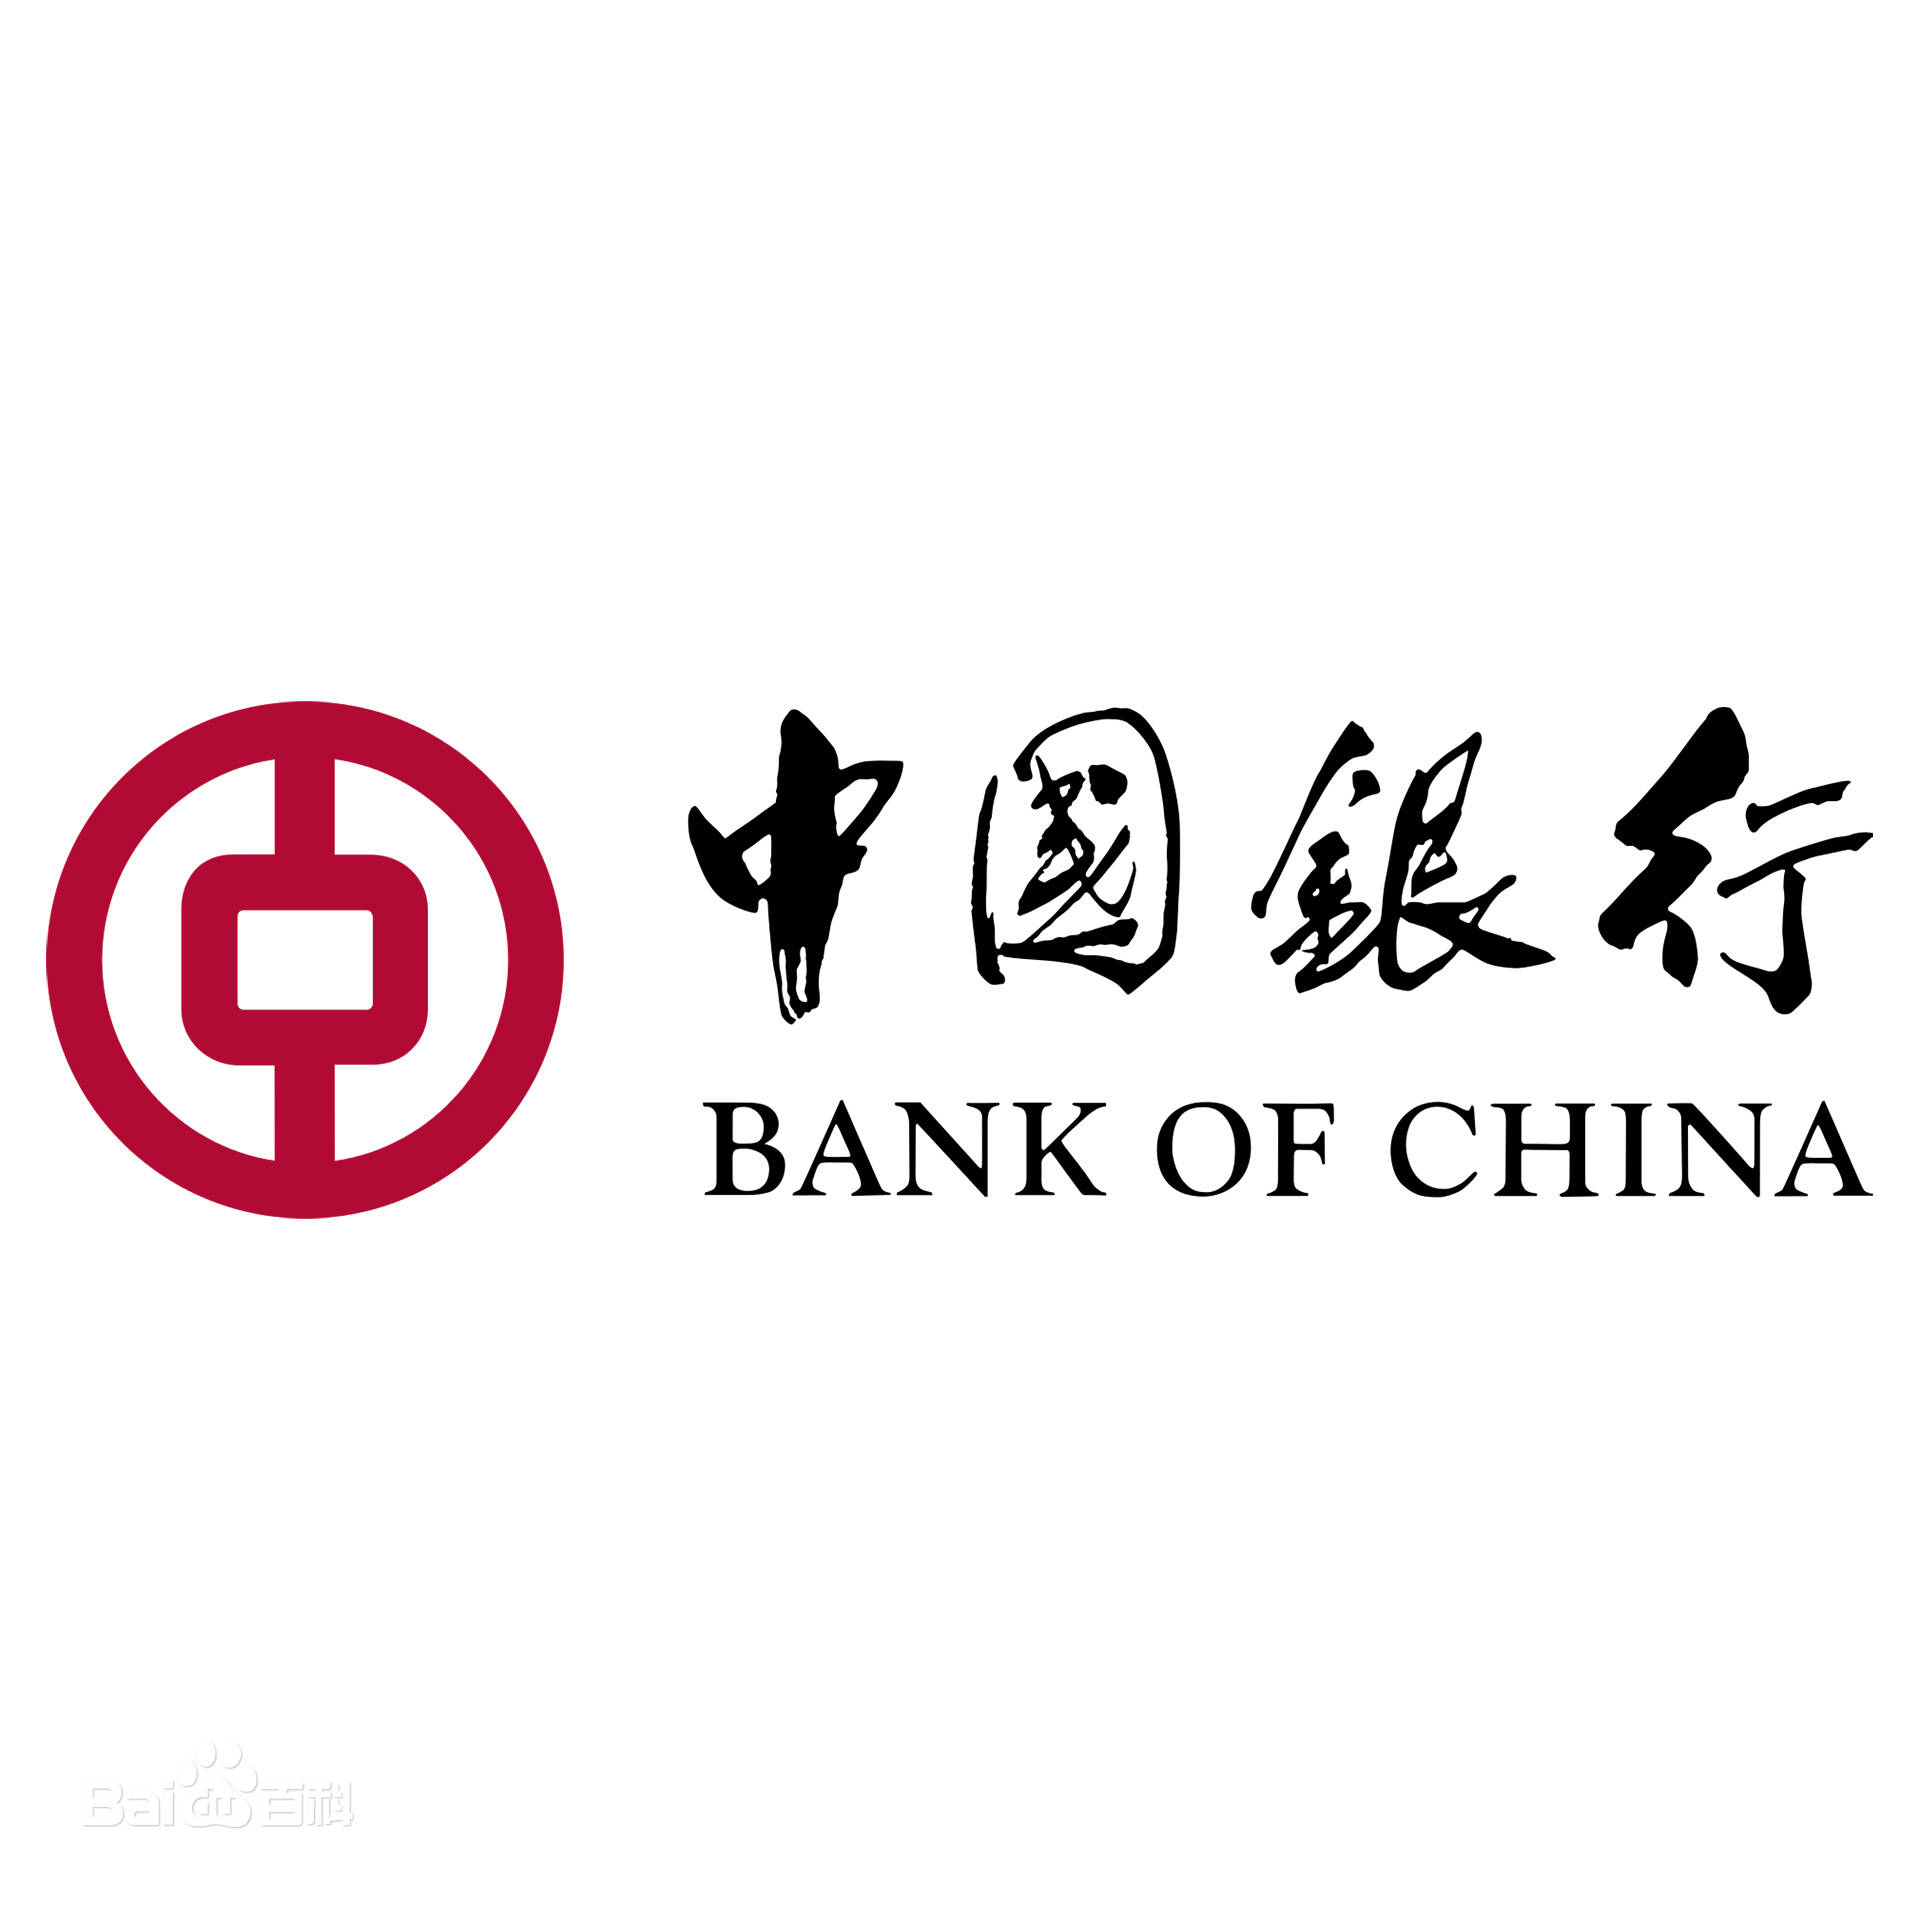 齐鲁银行落地全省首笔数字人民币“济担-创业贷”